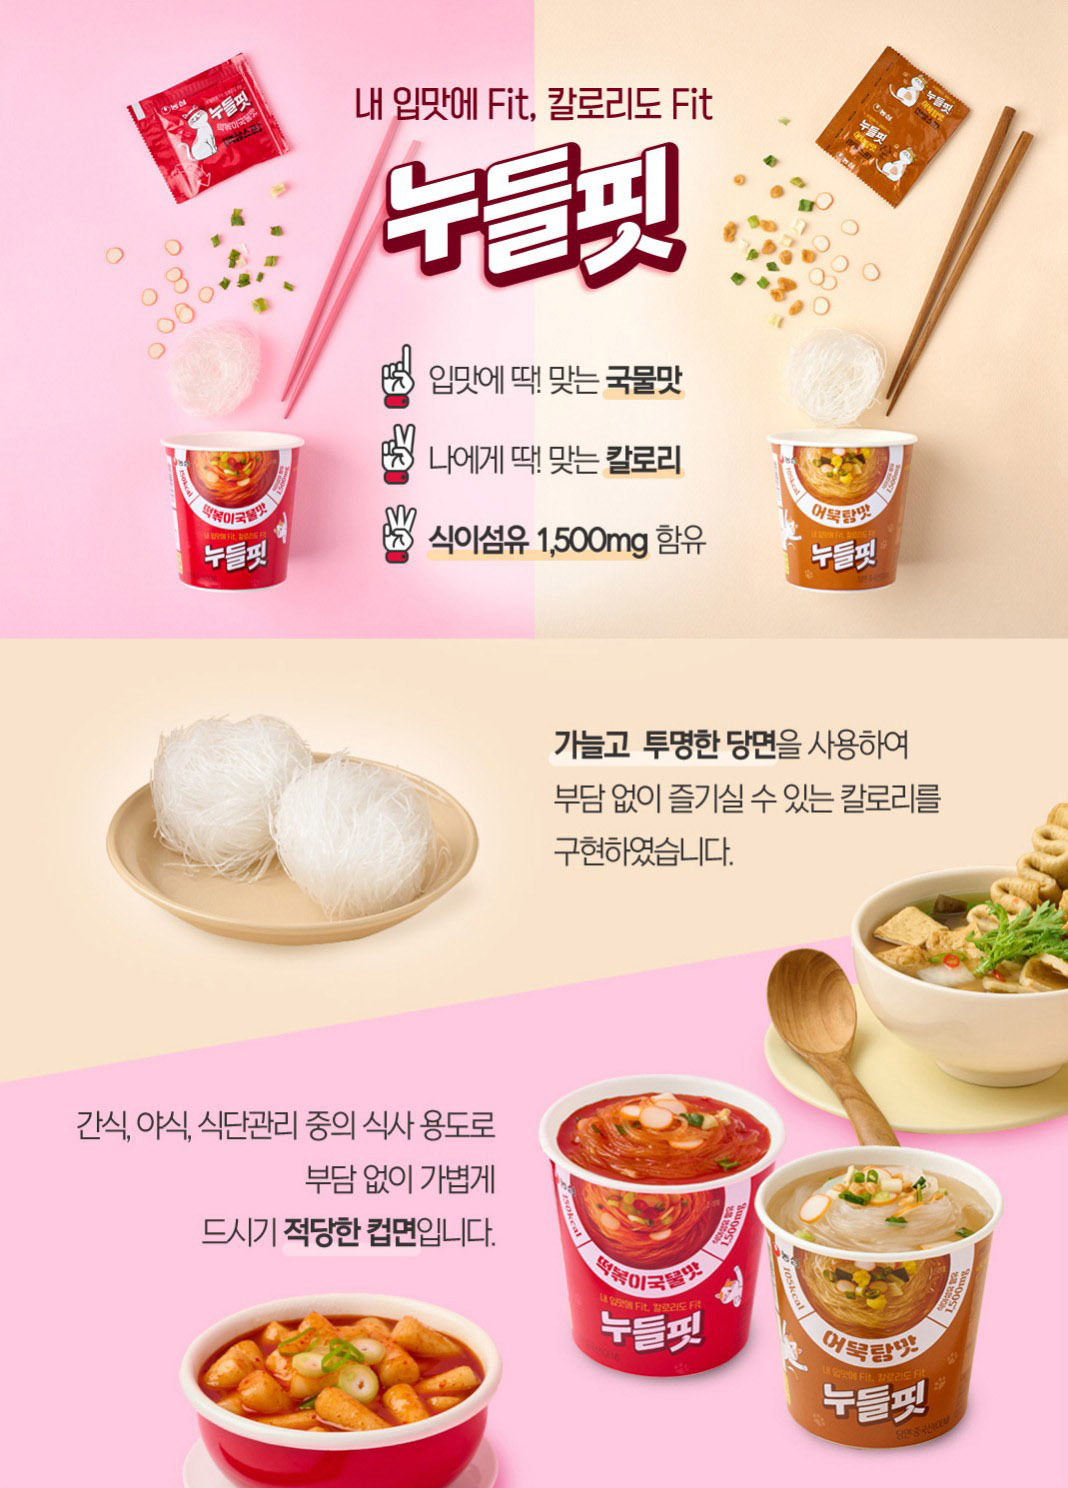 韓國食品-[農心] Noodlefit (魚糕湯味) 31.2g